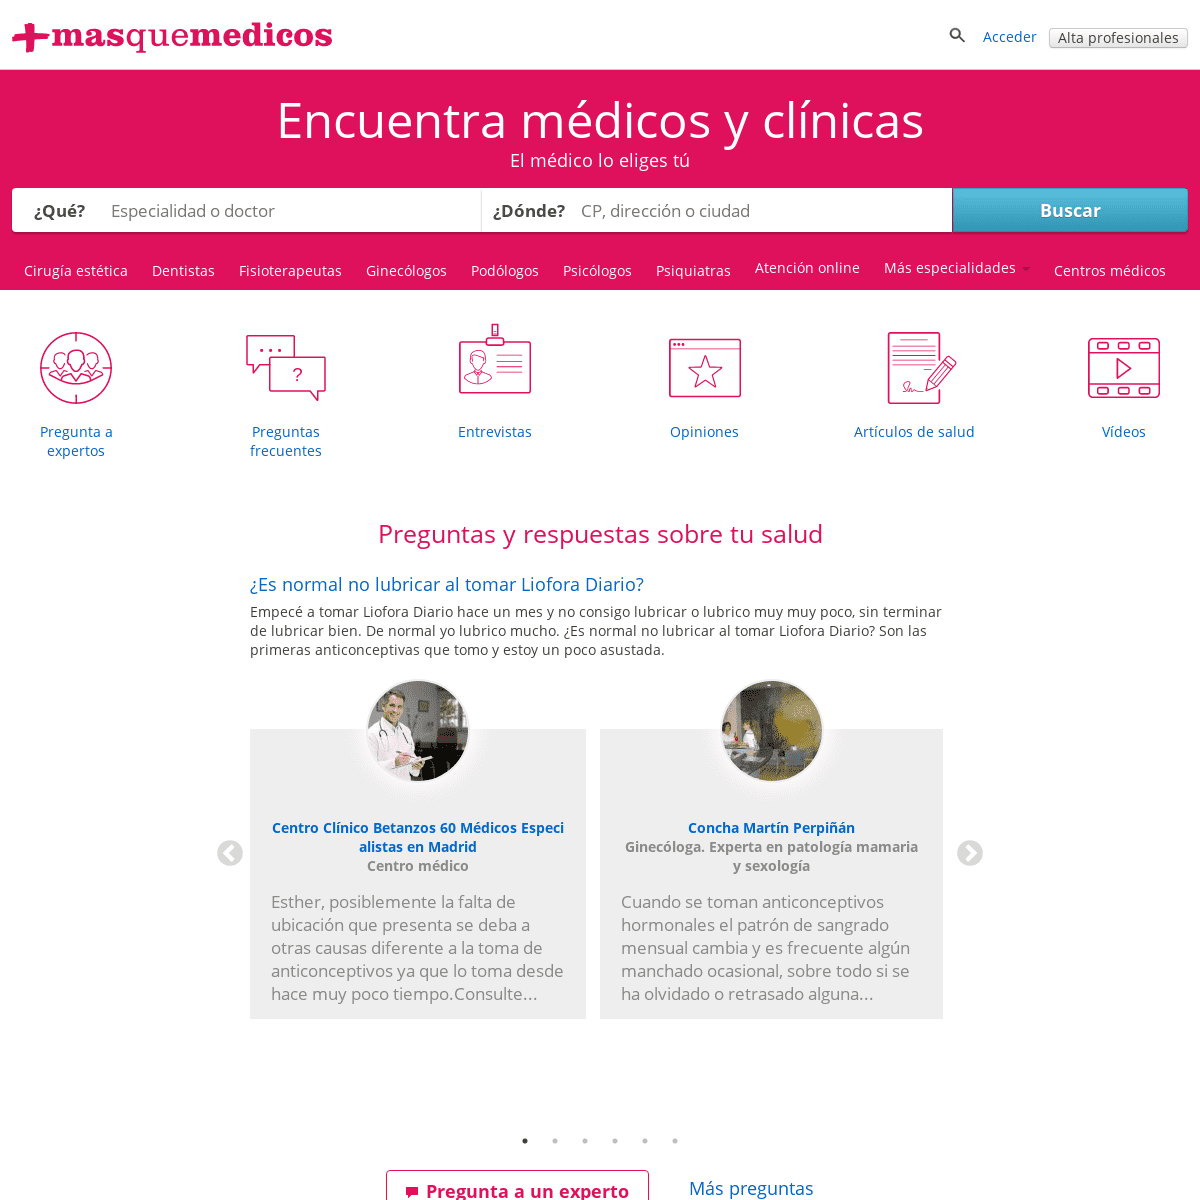 A complete backup of masquemedicos.com